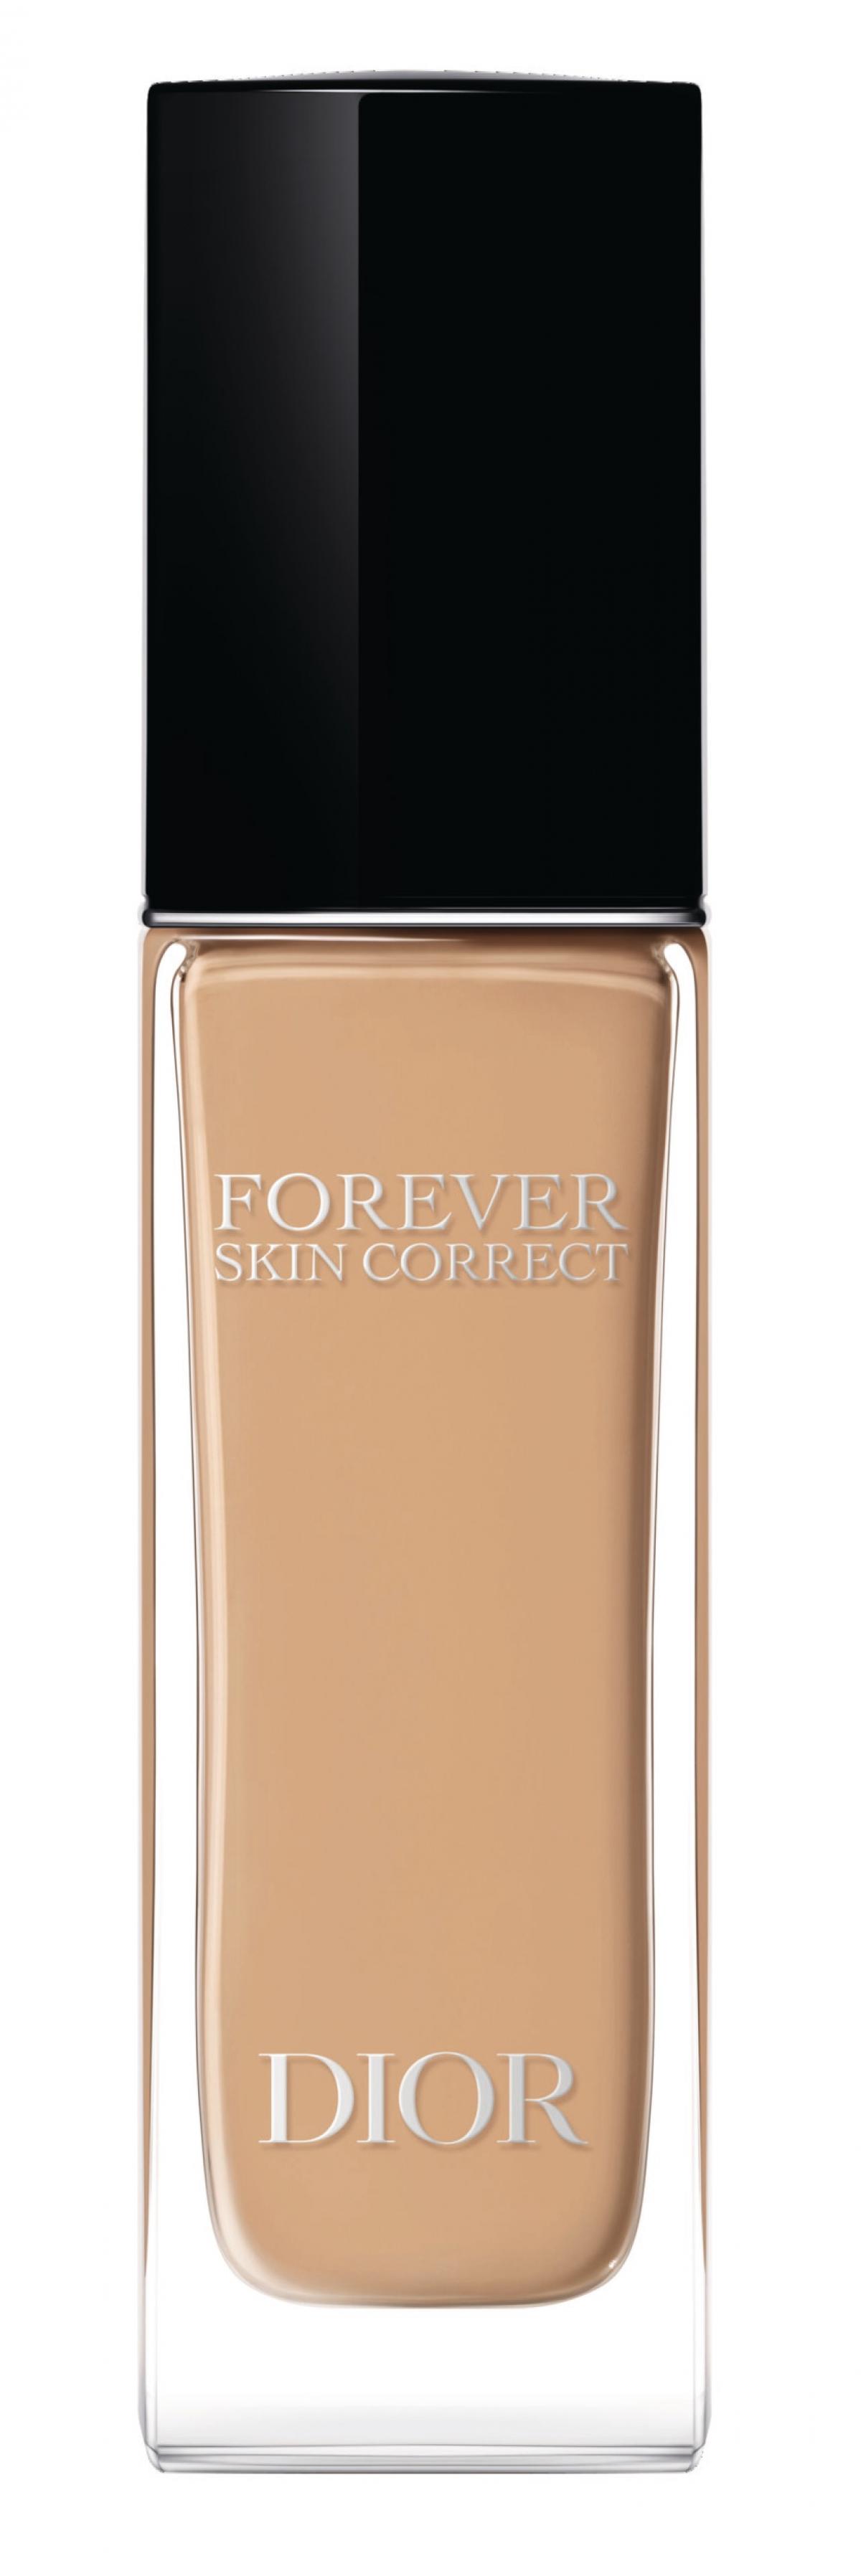 Forever Skin Correct Concealer